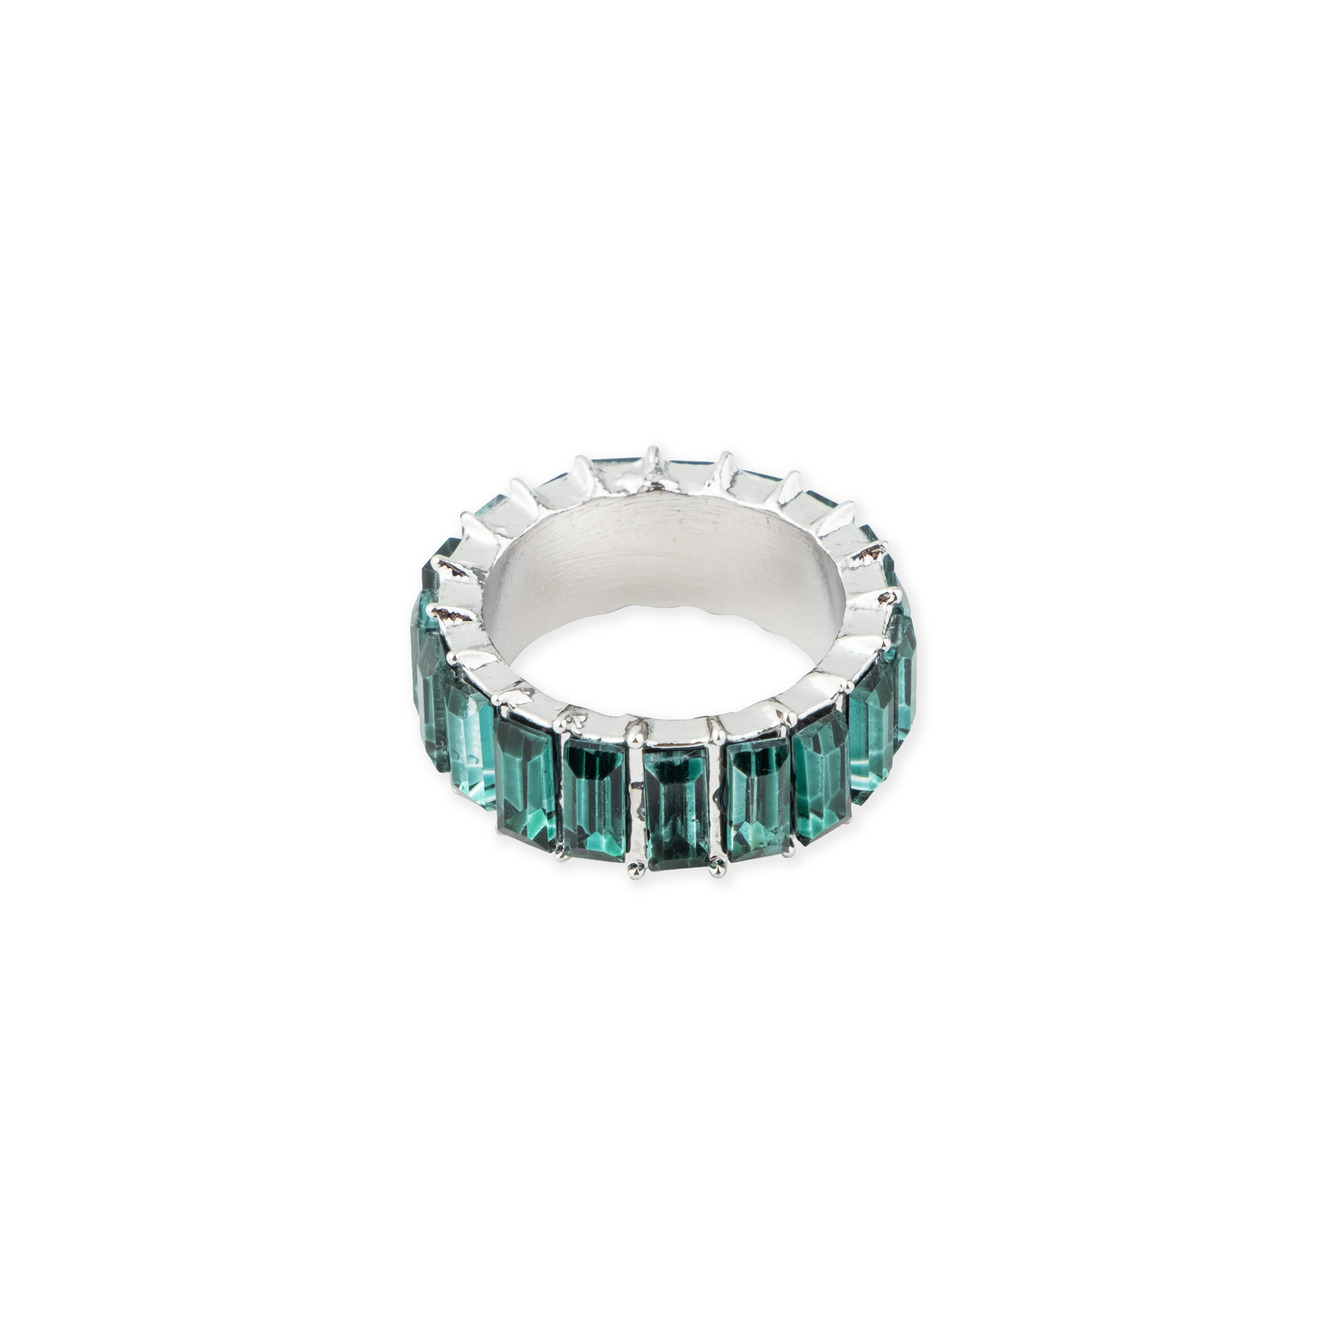 Herald Percy Серебристое кольцо с зелеными кристаллами herald percy серебристое колье галстук с кристаллами в виде креста